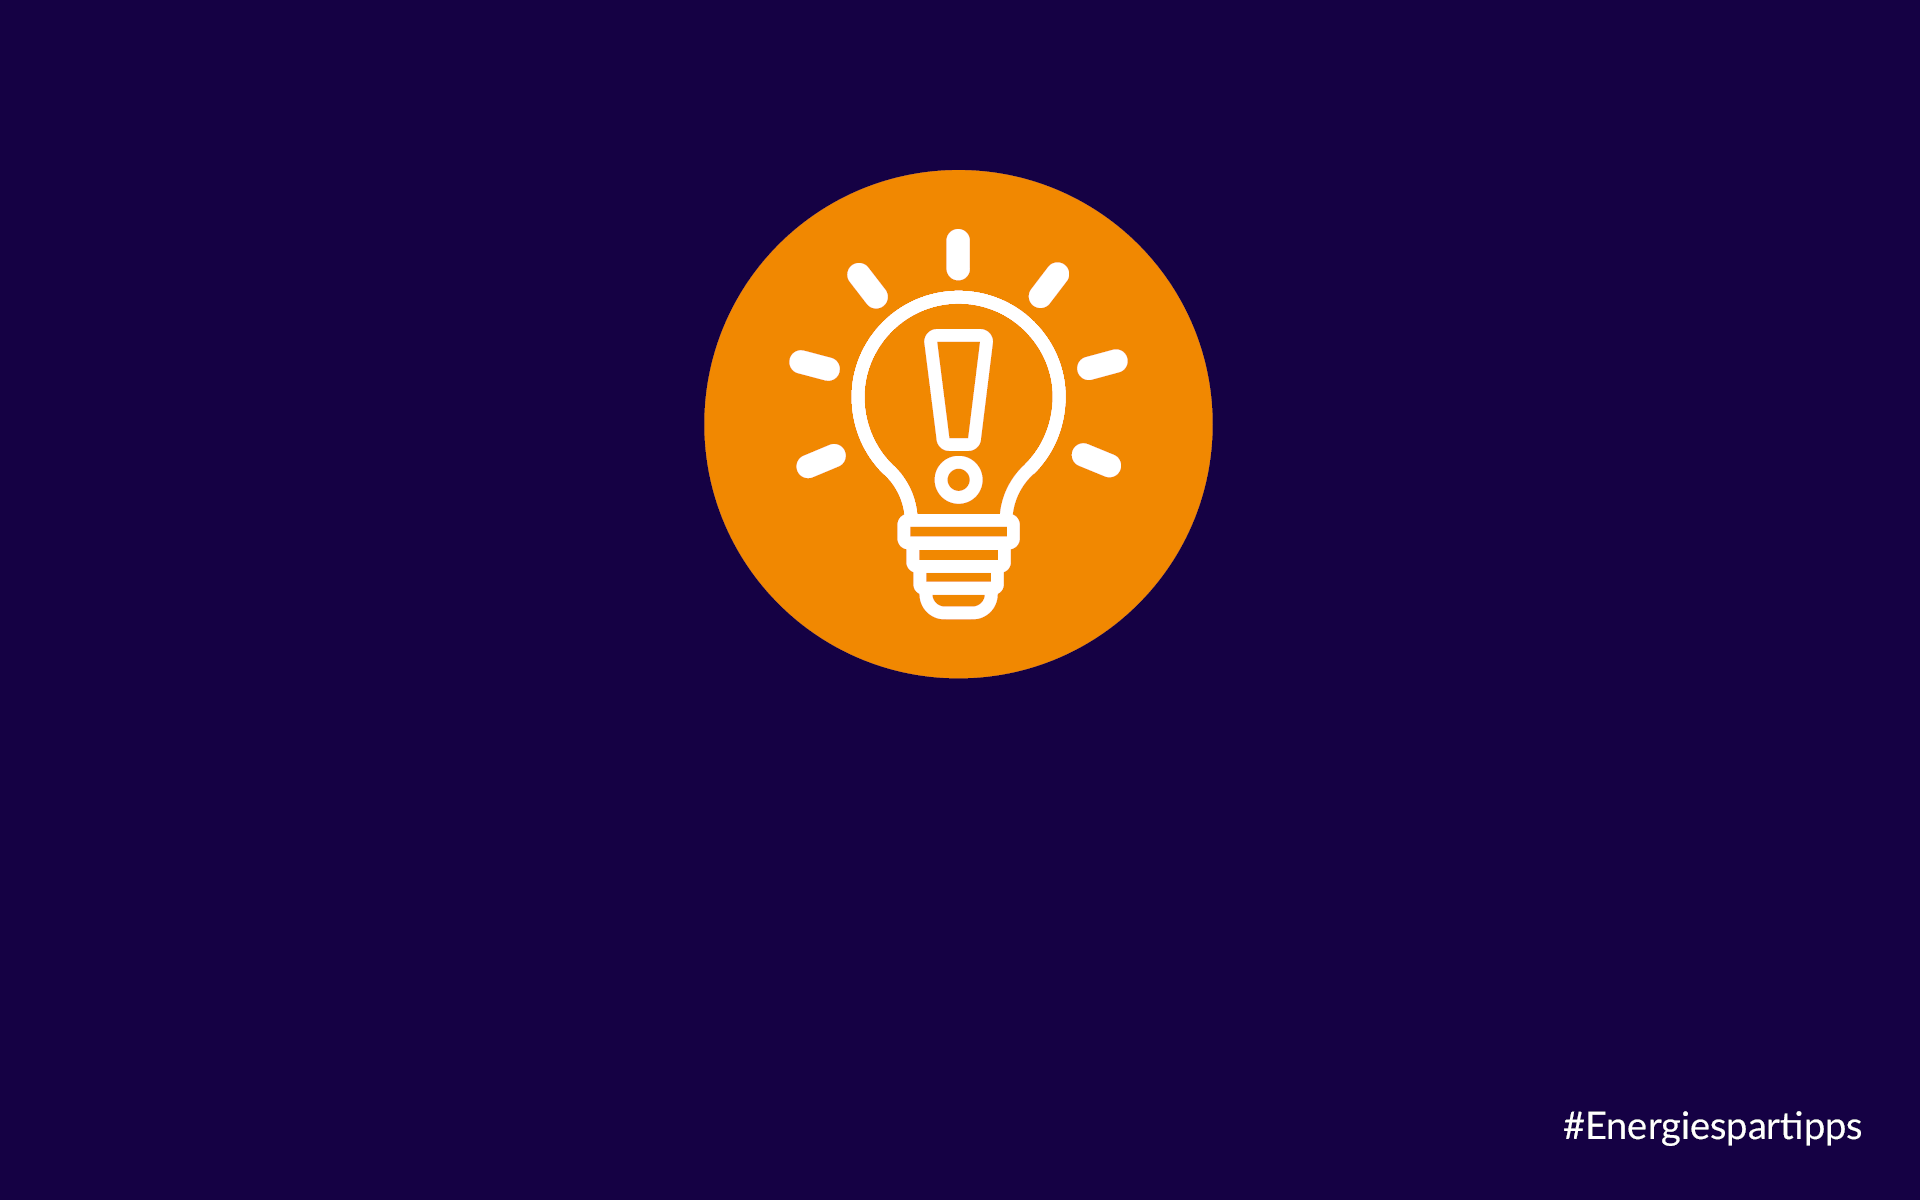 Glühbirne in orangenem Kreis auf blauem Hintergrund